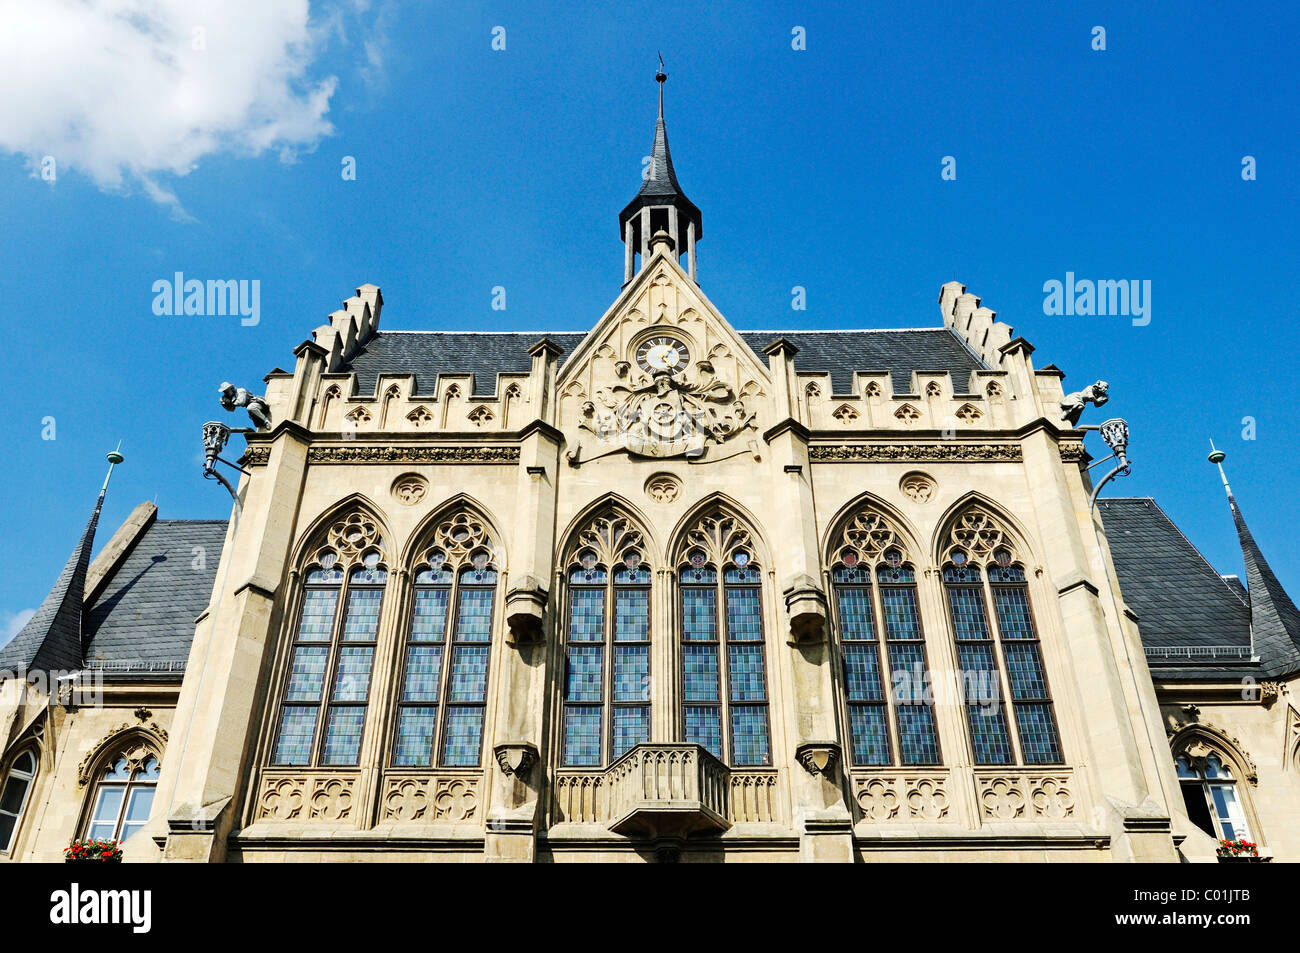 Erfurt city hall costruito nel revival gotico o stile neogotico, Fischmarkt mercato del pesce, Erfurt, Turingia, Germania, Europa Foto Stock